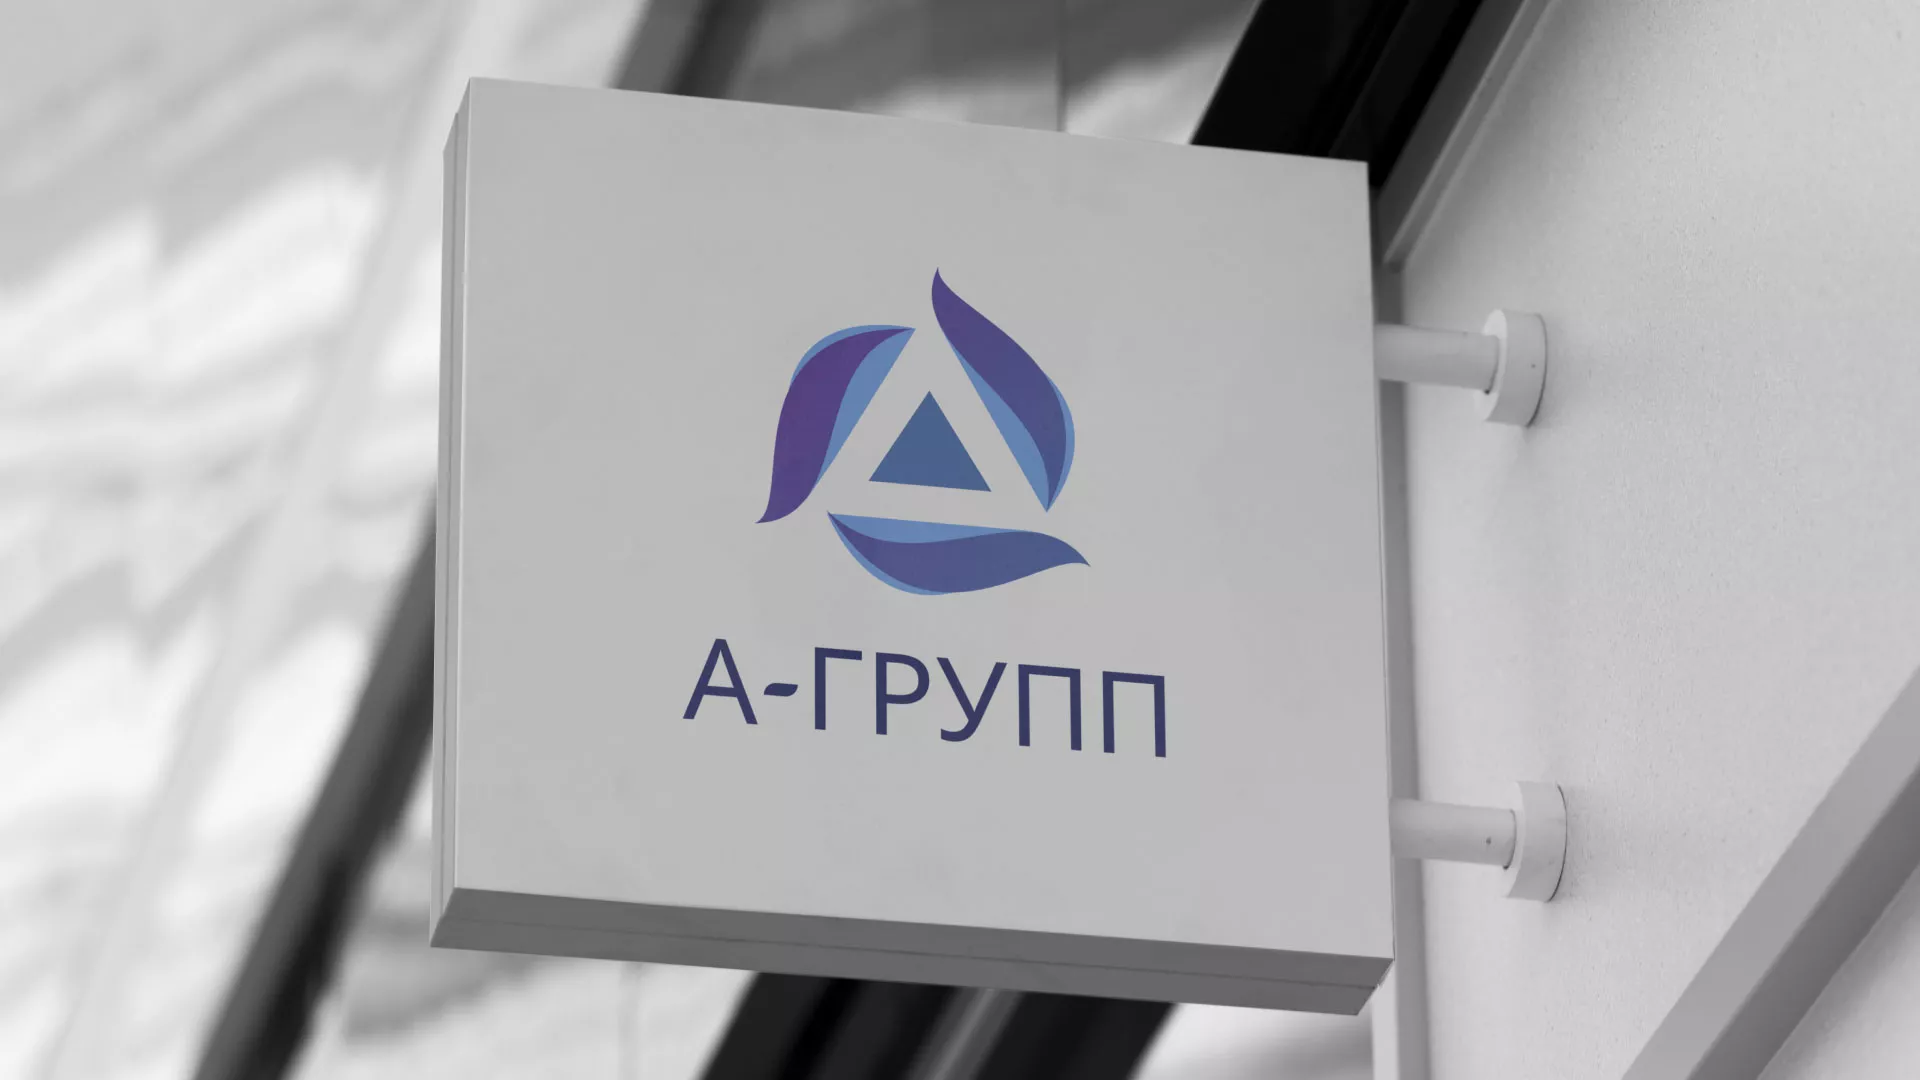 Создание логотипа компании «А-ГРУПП» в Вязьме